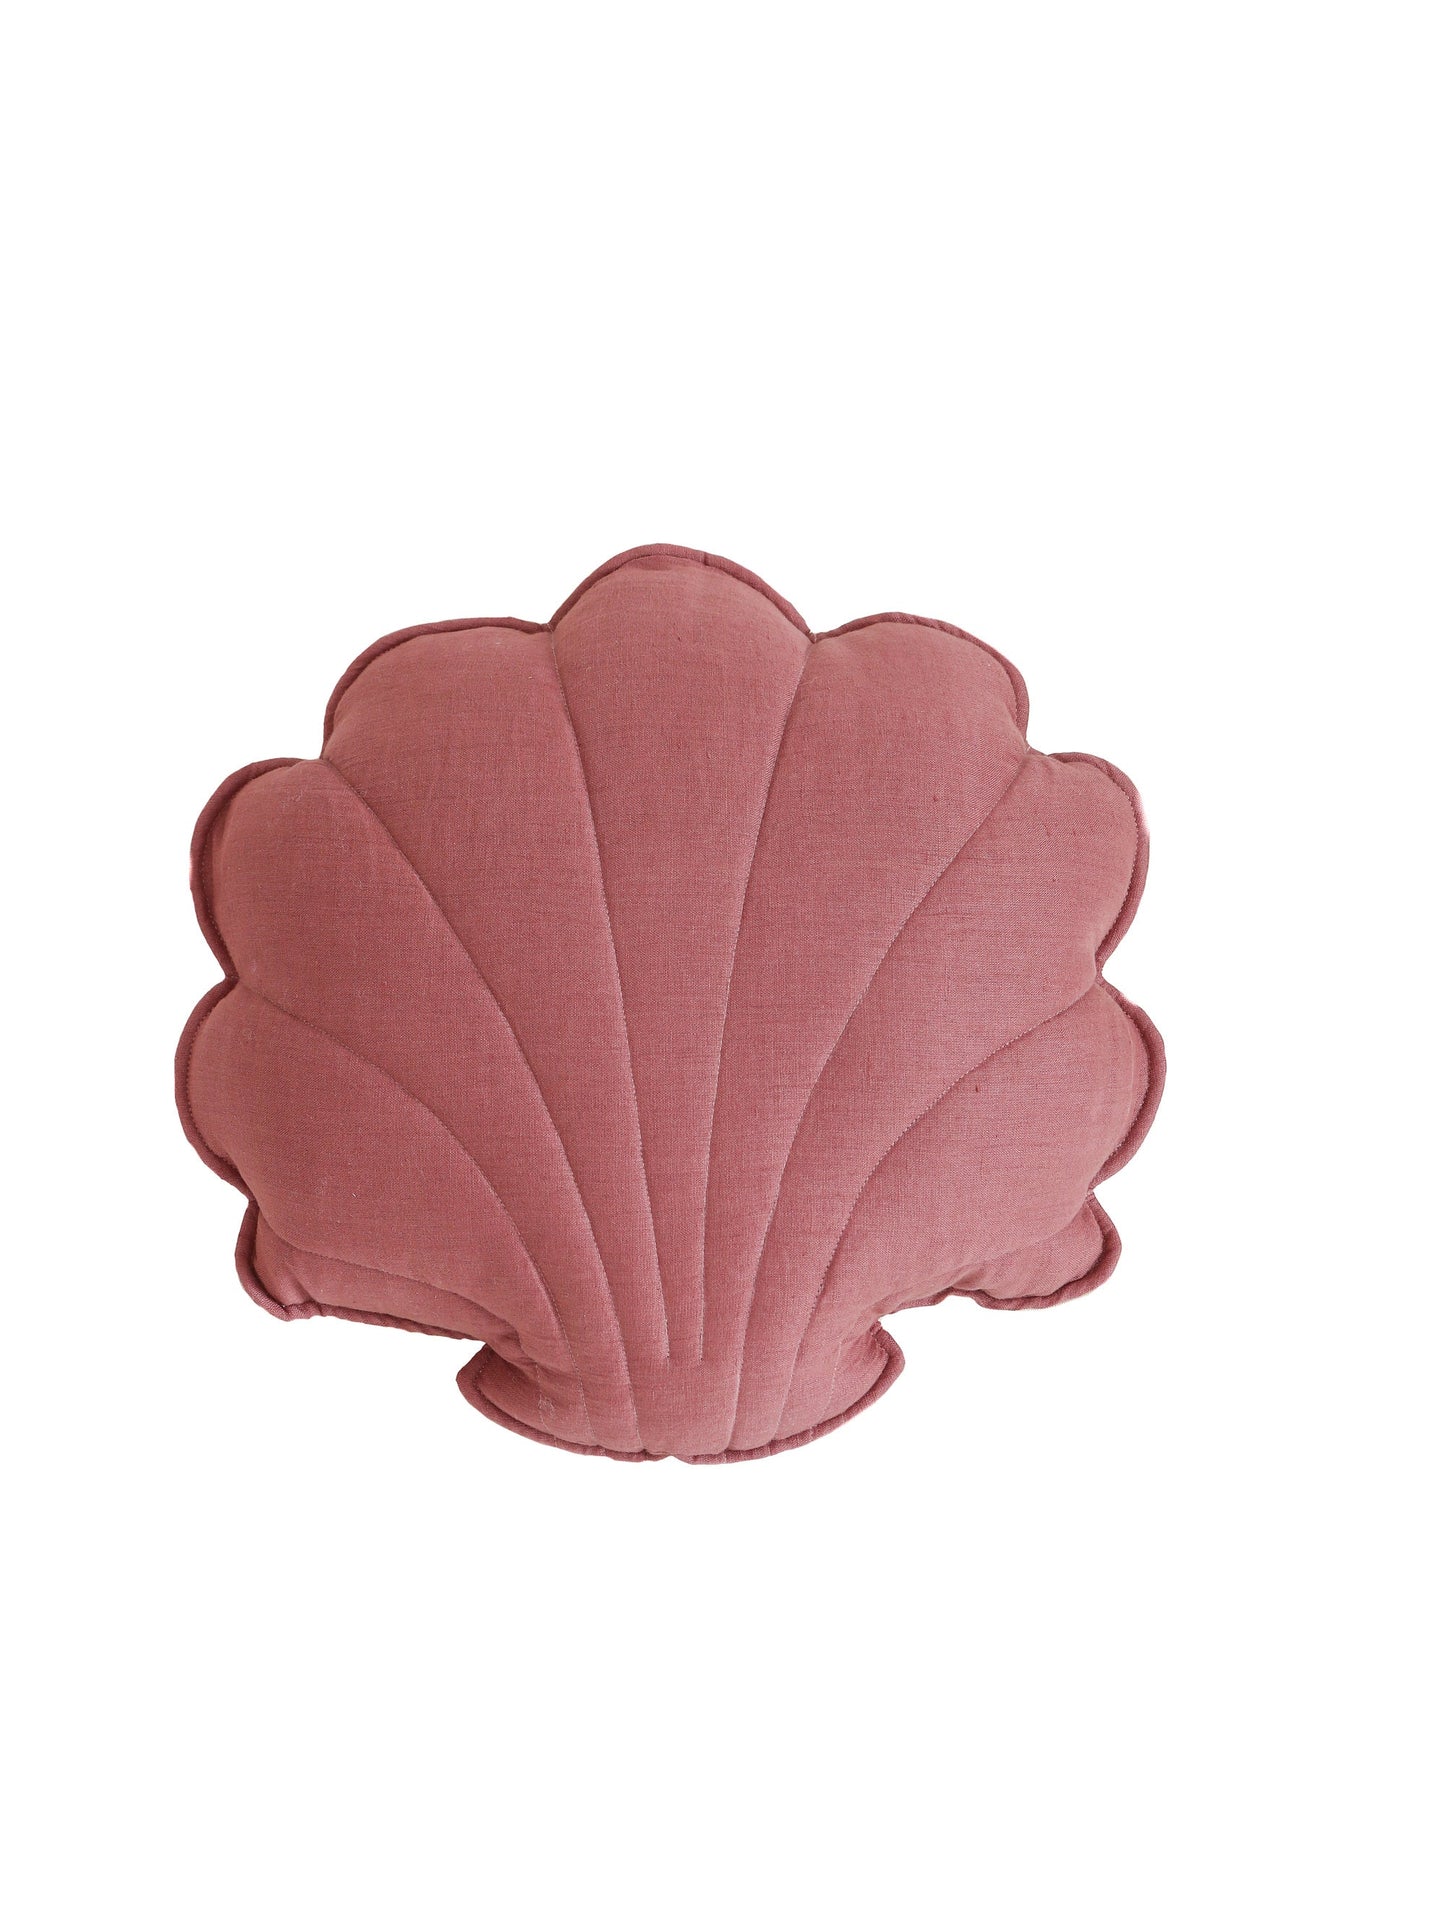 Linen “Marsala” Shell Pillow